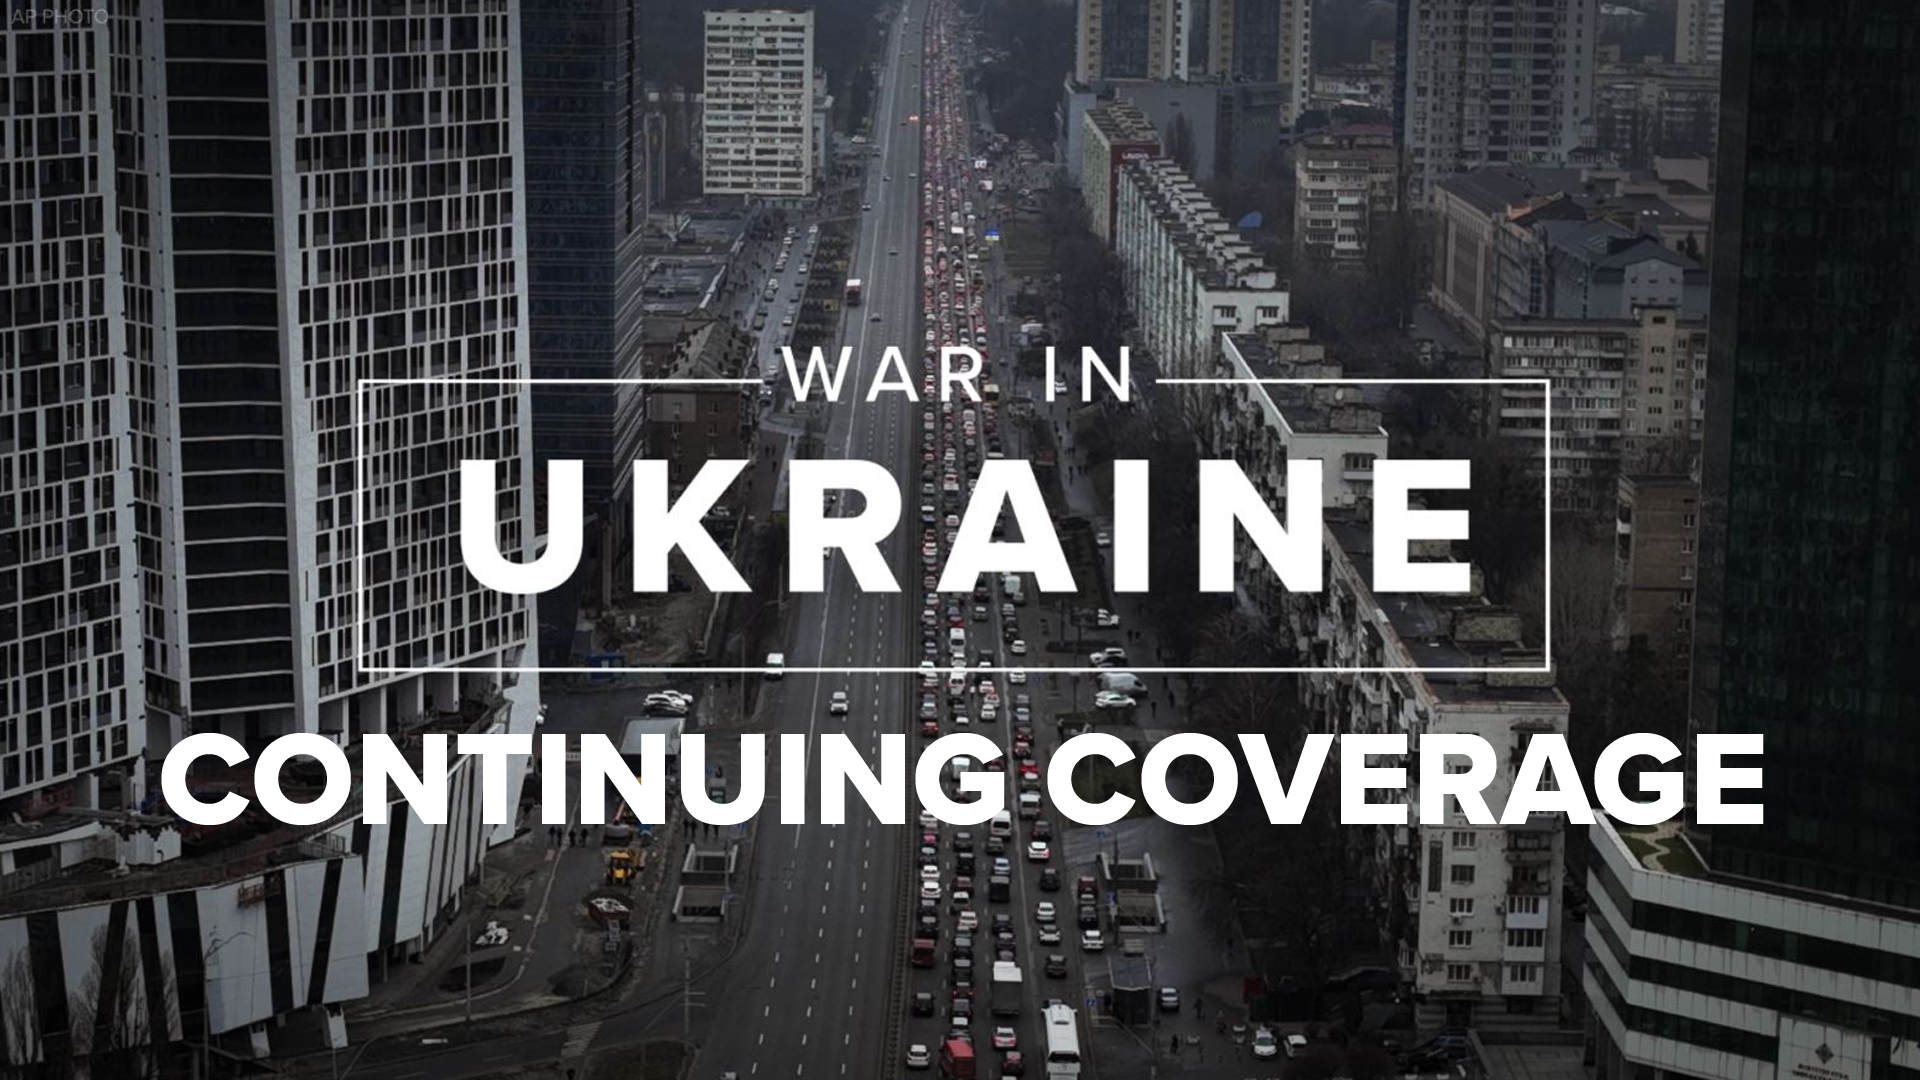 War in Ukraine: CONTINUING COVERAGE